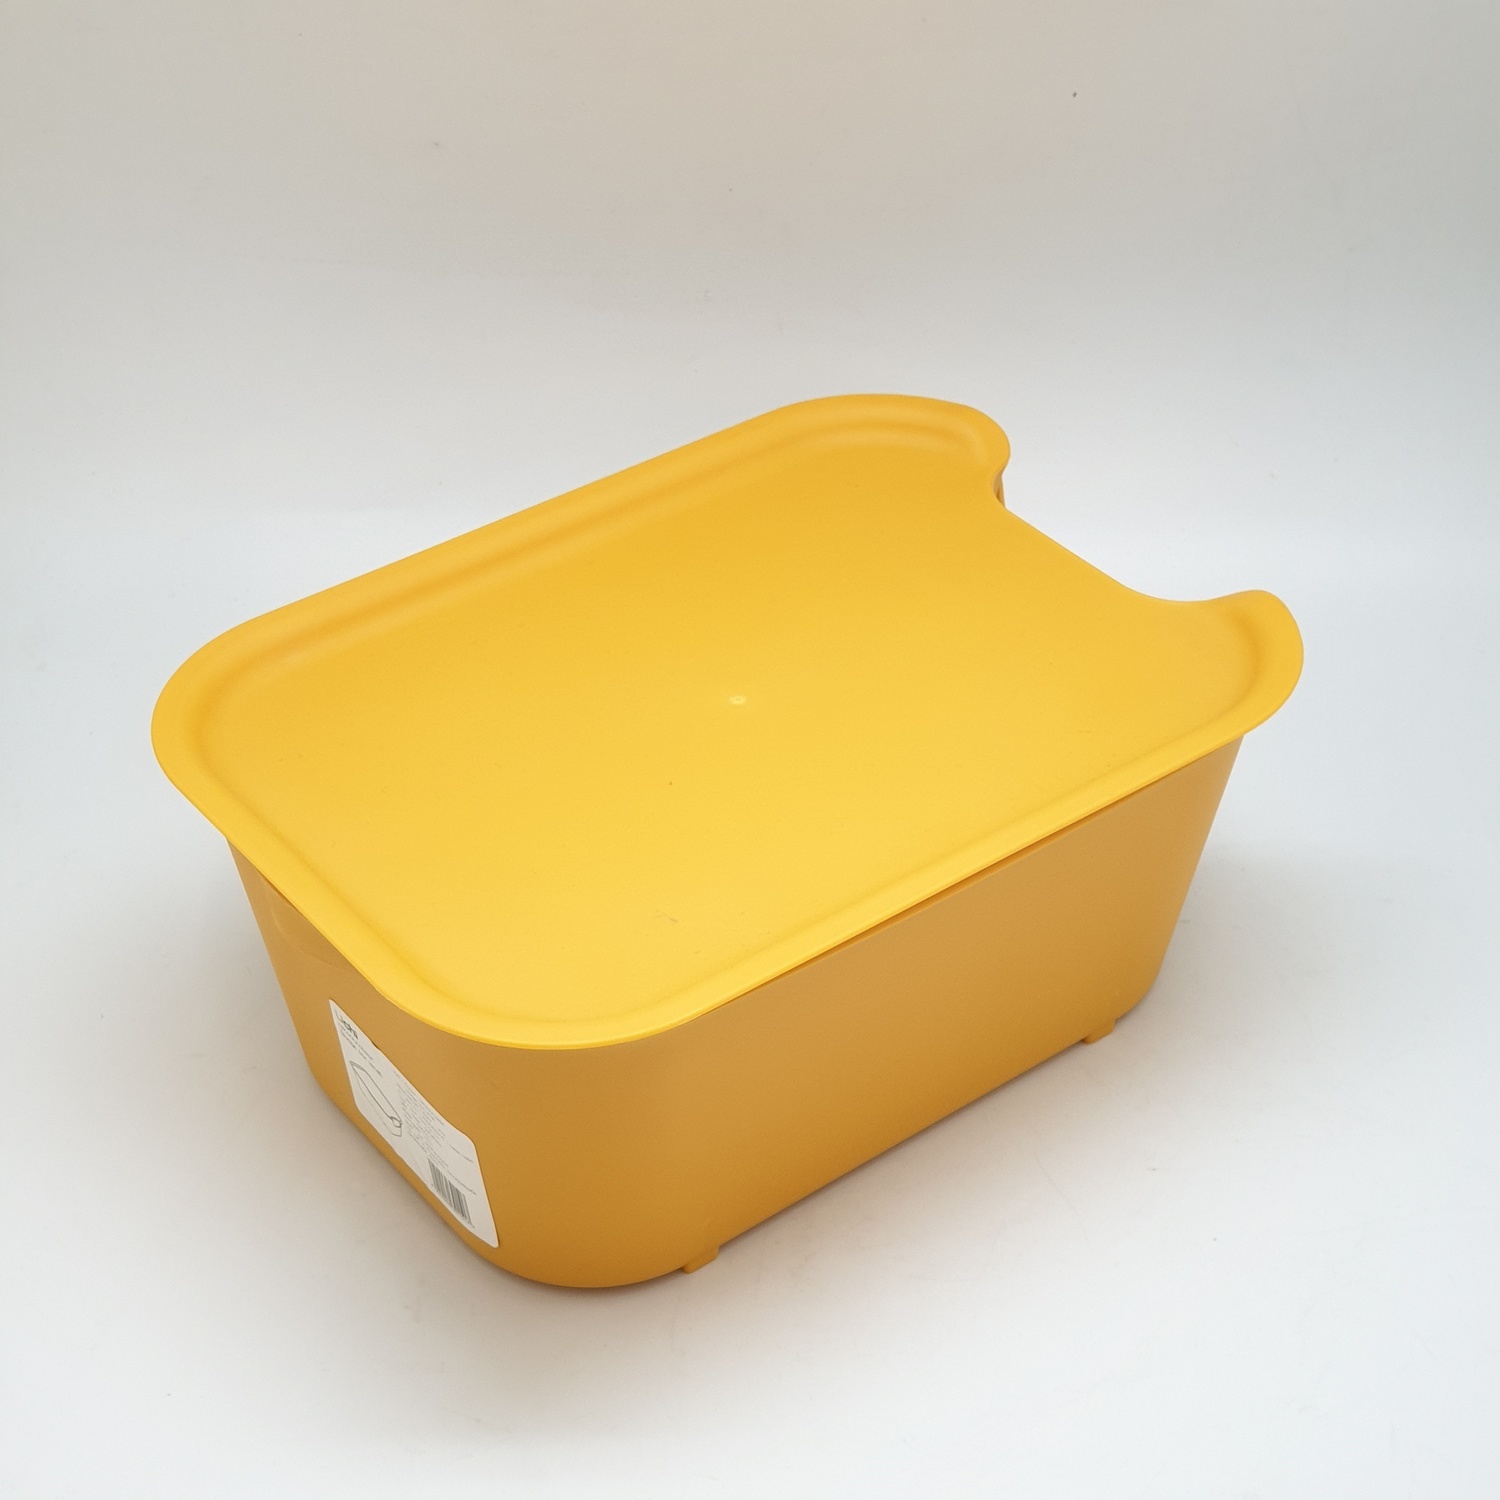 GOME กล่องอเนกประสงค์ ขนาด 18 x 25.5 x 11 cm. ZWMLP009-YE  สีเหลือง